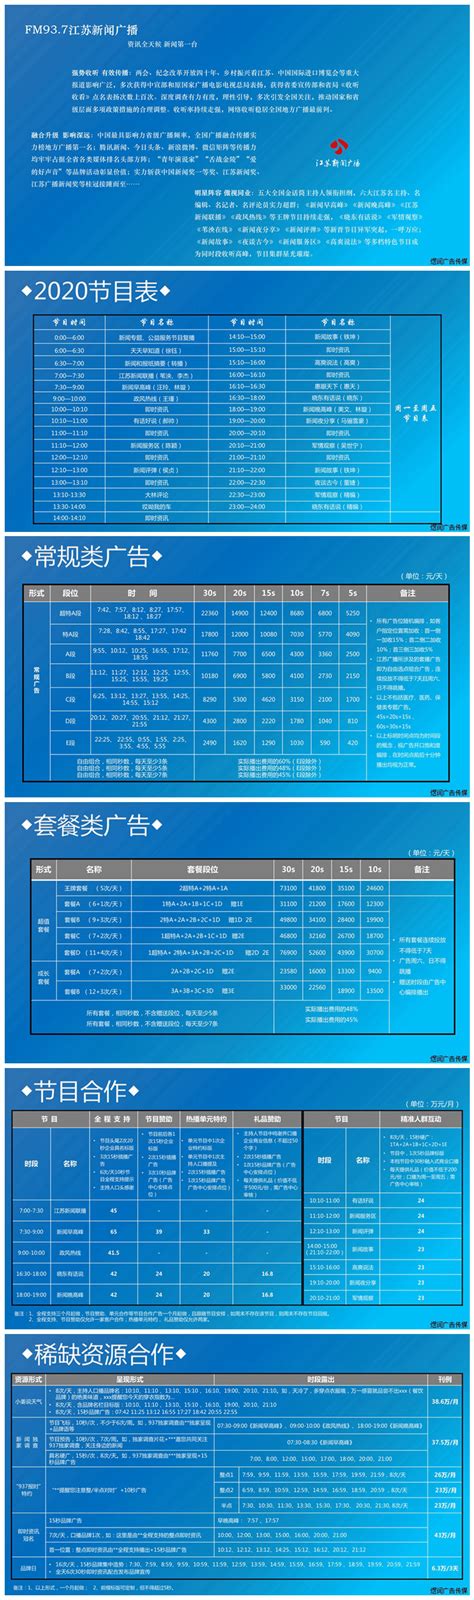 江苏新闻广播广告电话,2020年江苏新闻广播FM93.7广告价格